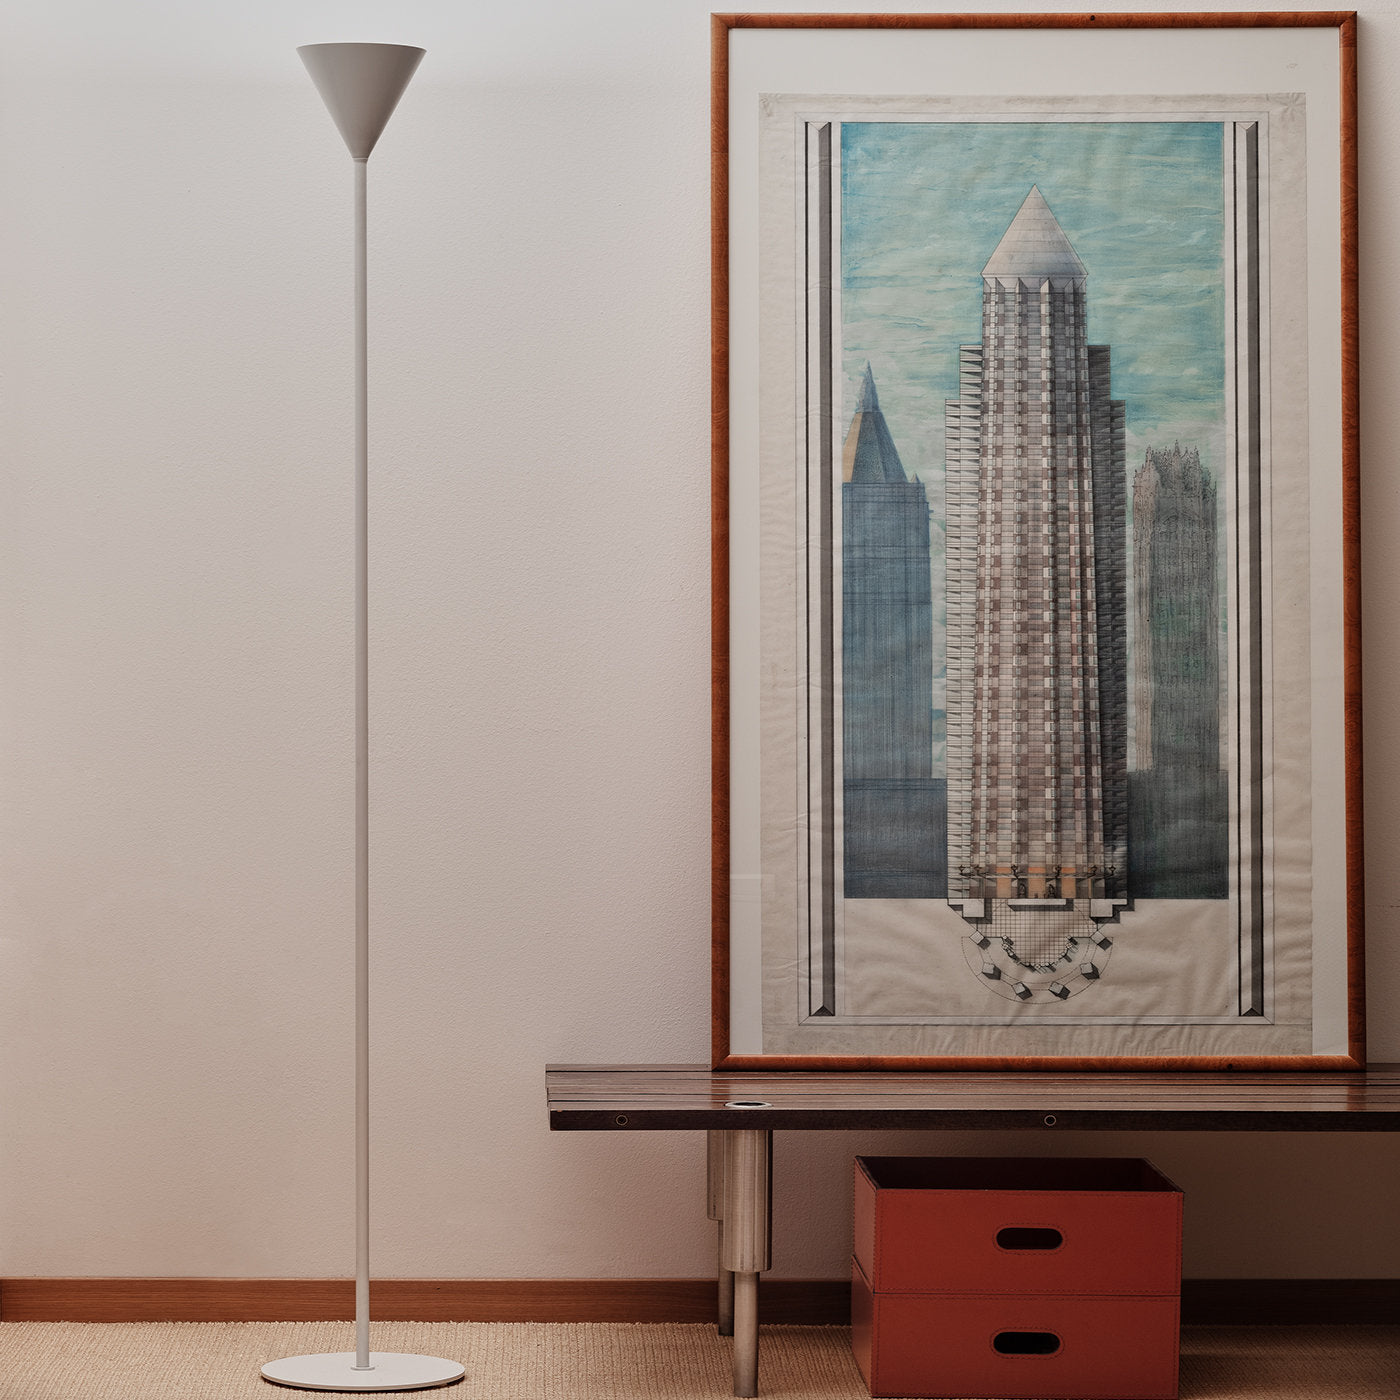 Cono Small White Floor Lamp by Carlo Guglielmi - Alternative view 1